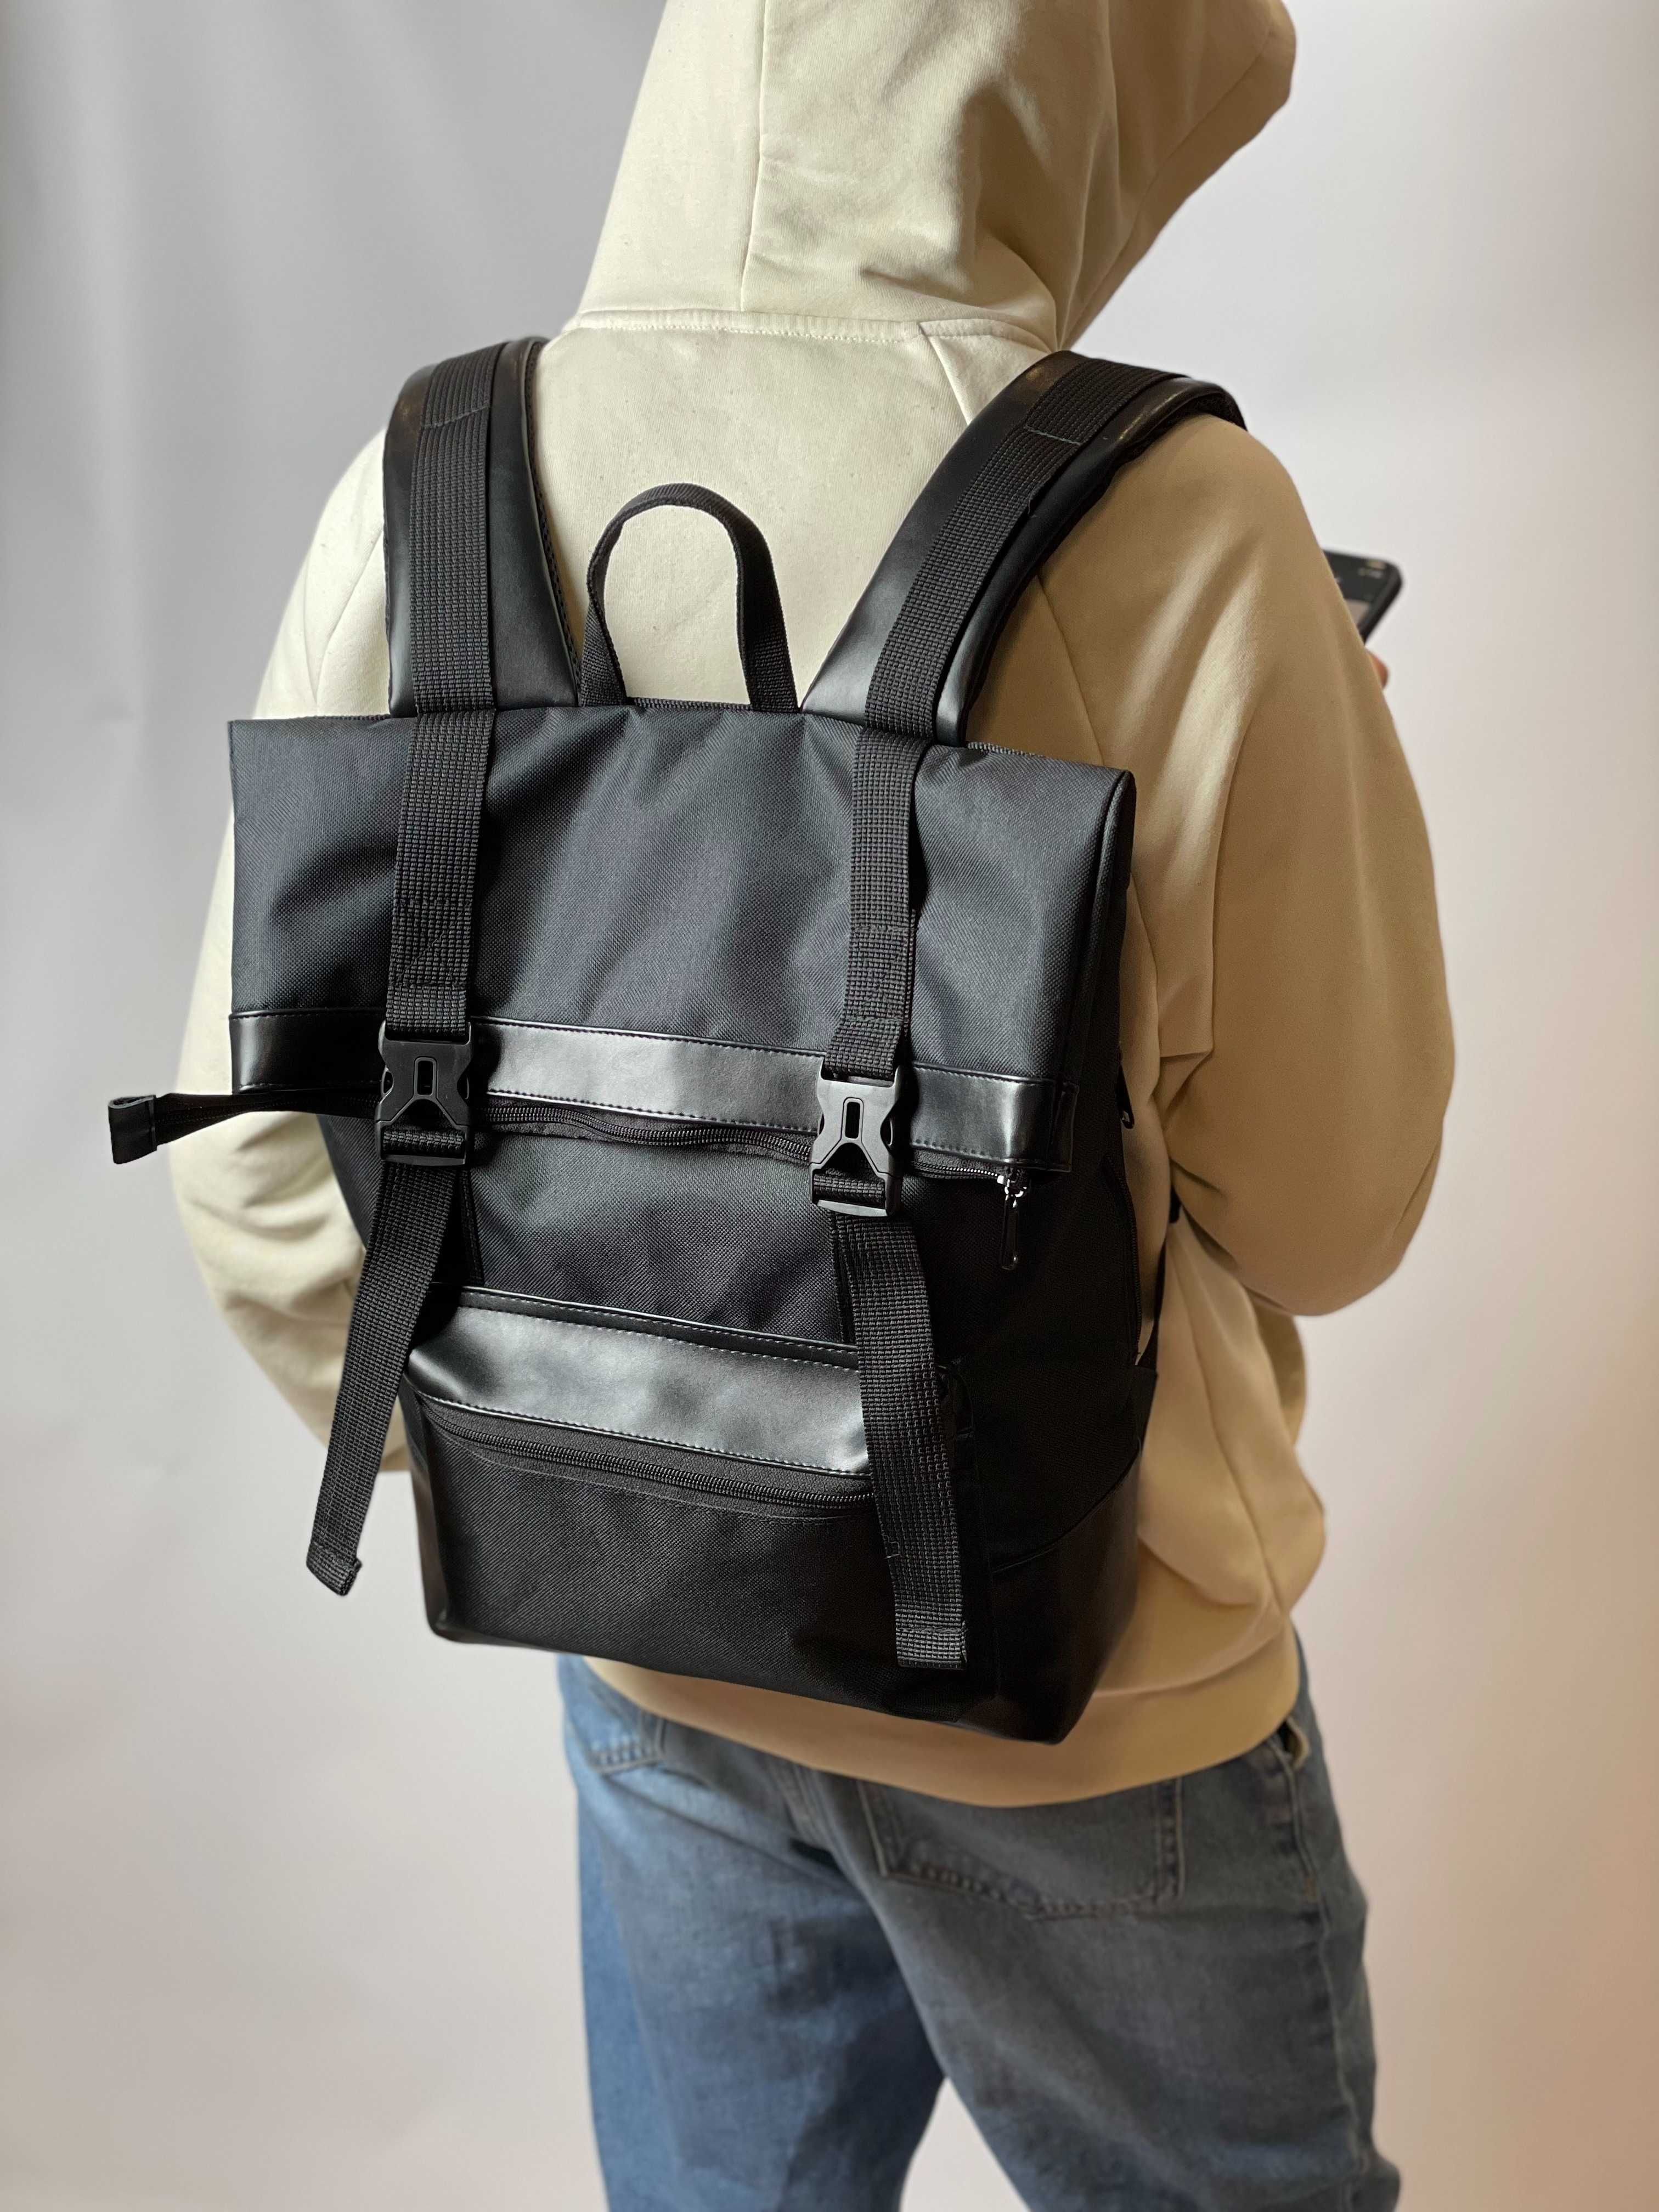 Унисекс рюкзак Rolltop | Мужской, детский, школьный рюкзак Роллтоп